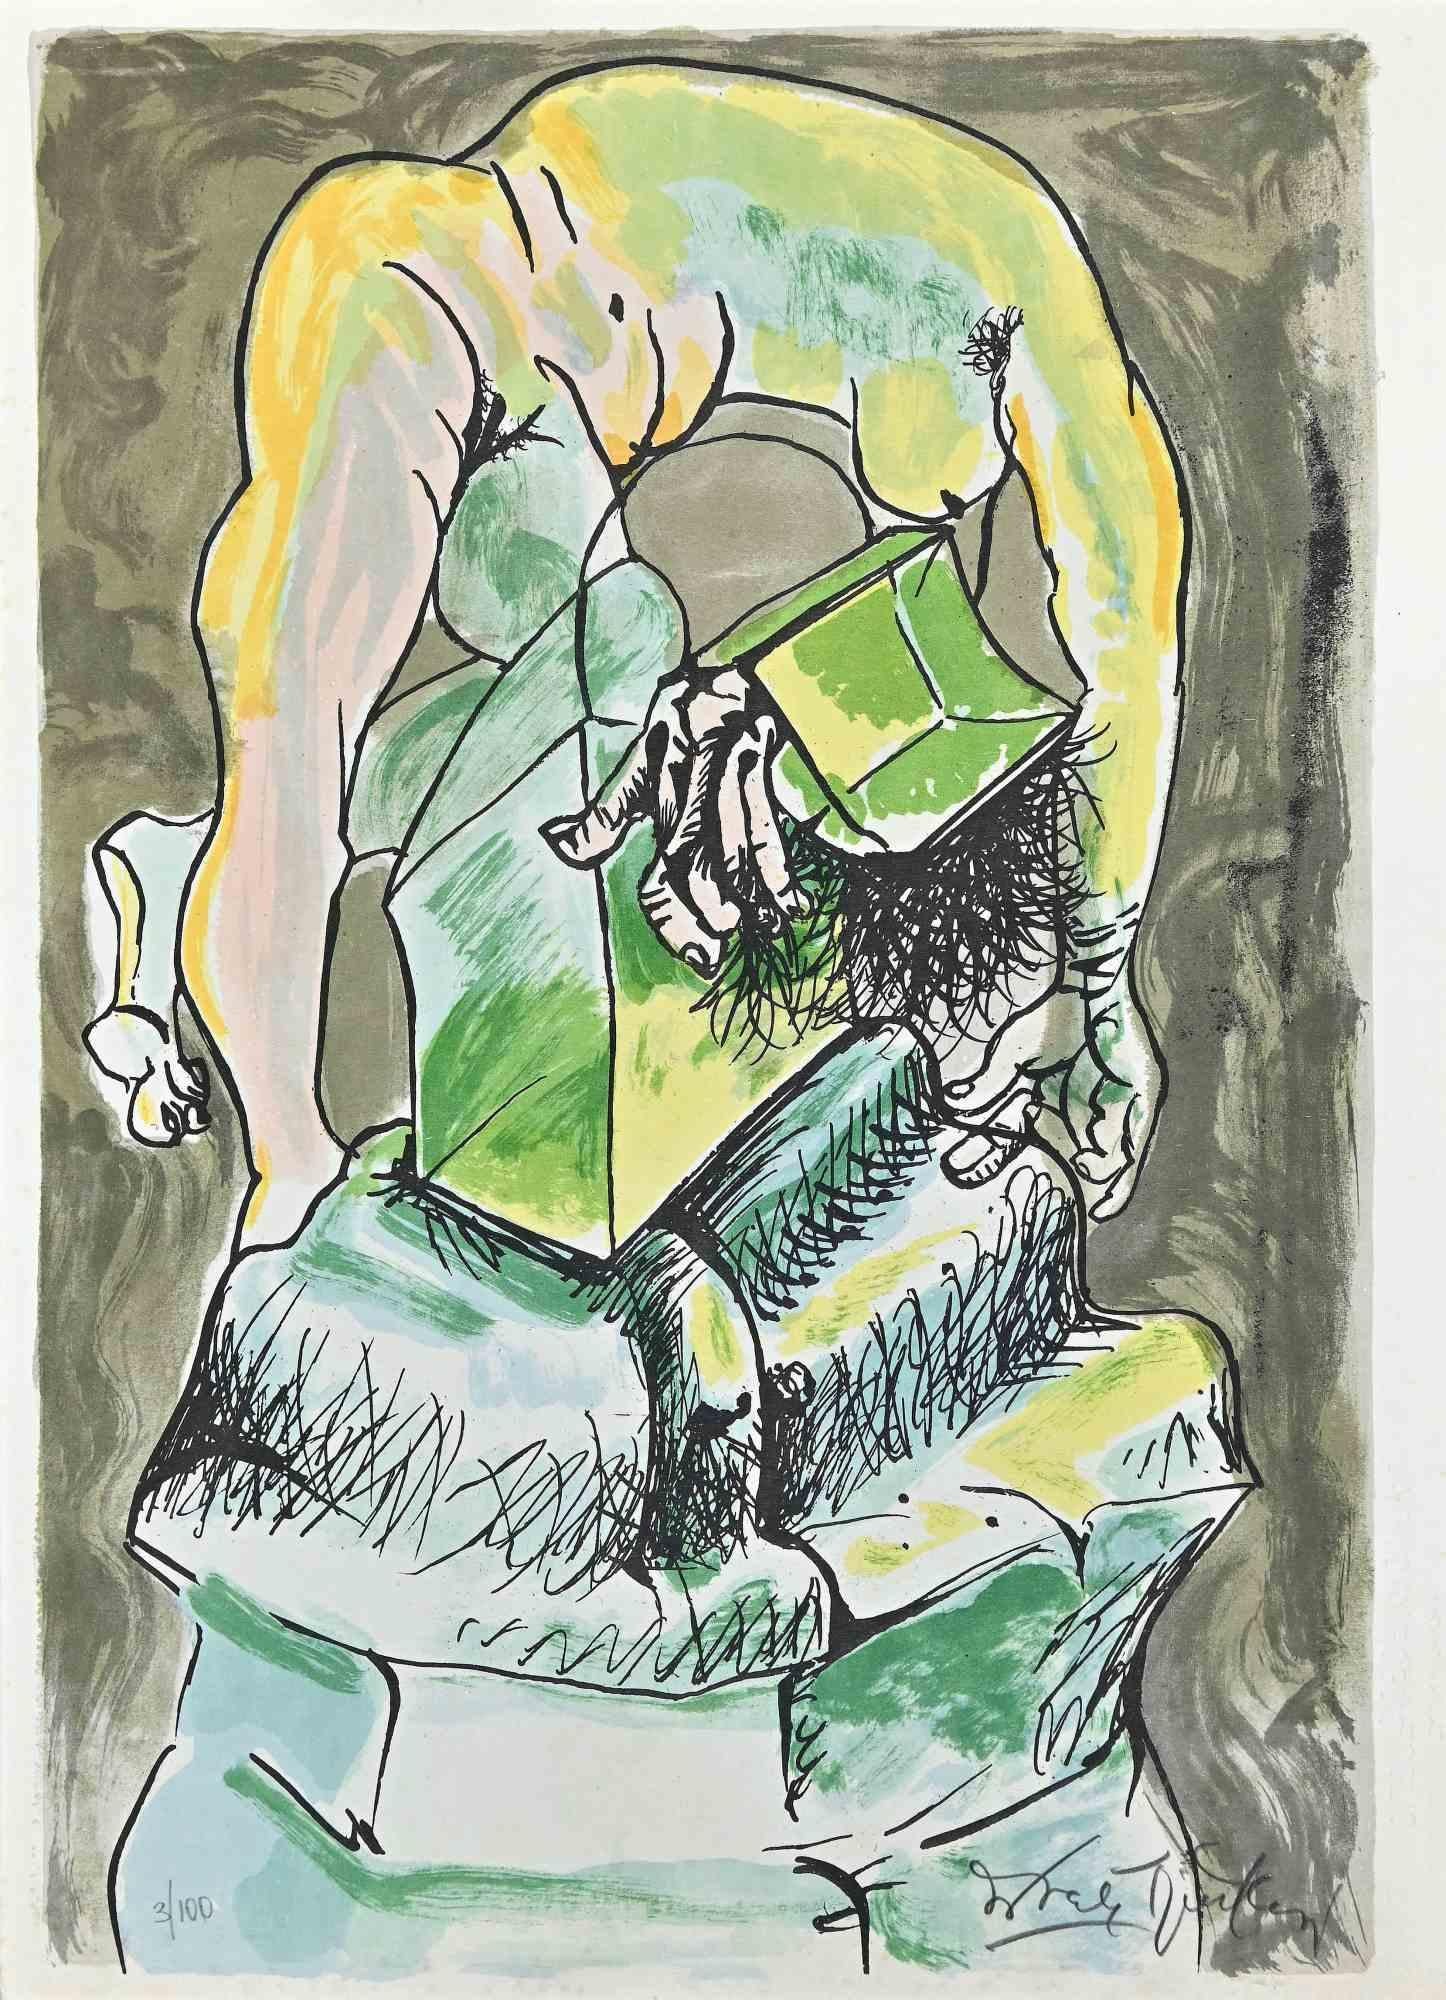 Nude and Stones ist ein Original-Kunstwerk von Ercole Pignatelli aus dem Jahr 1972. Kolorierte Lithographie.

Rechts unten mit Bleistift vom Künstler handsigniert und nummeriert. Auflage: 100 Stück. Das Kunstwerk wird von "la nuova foglio s.p.a."